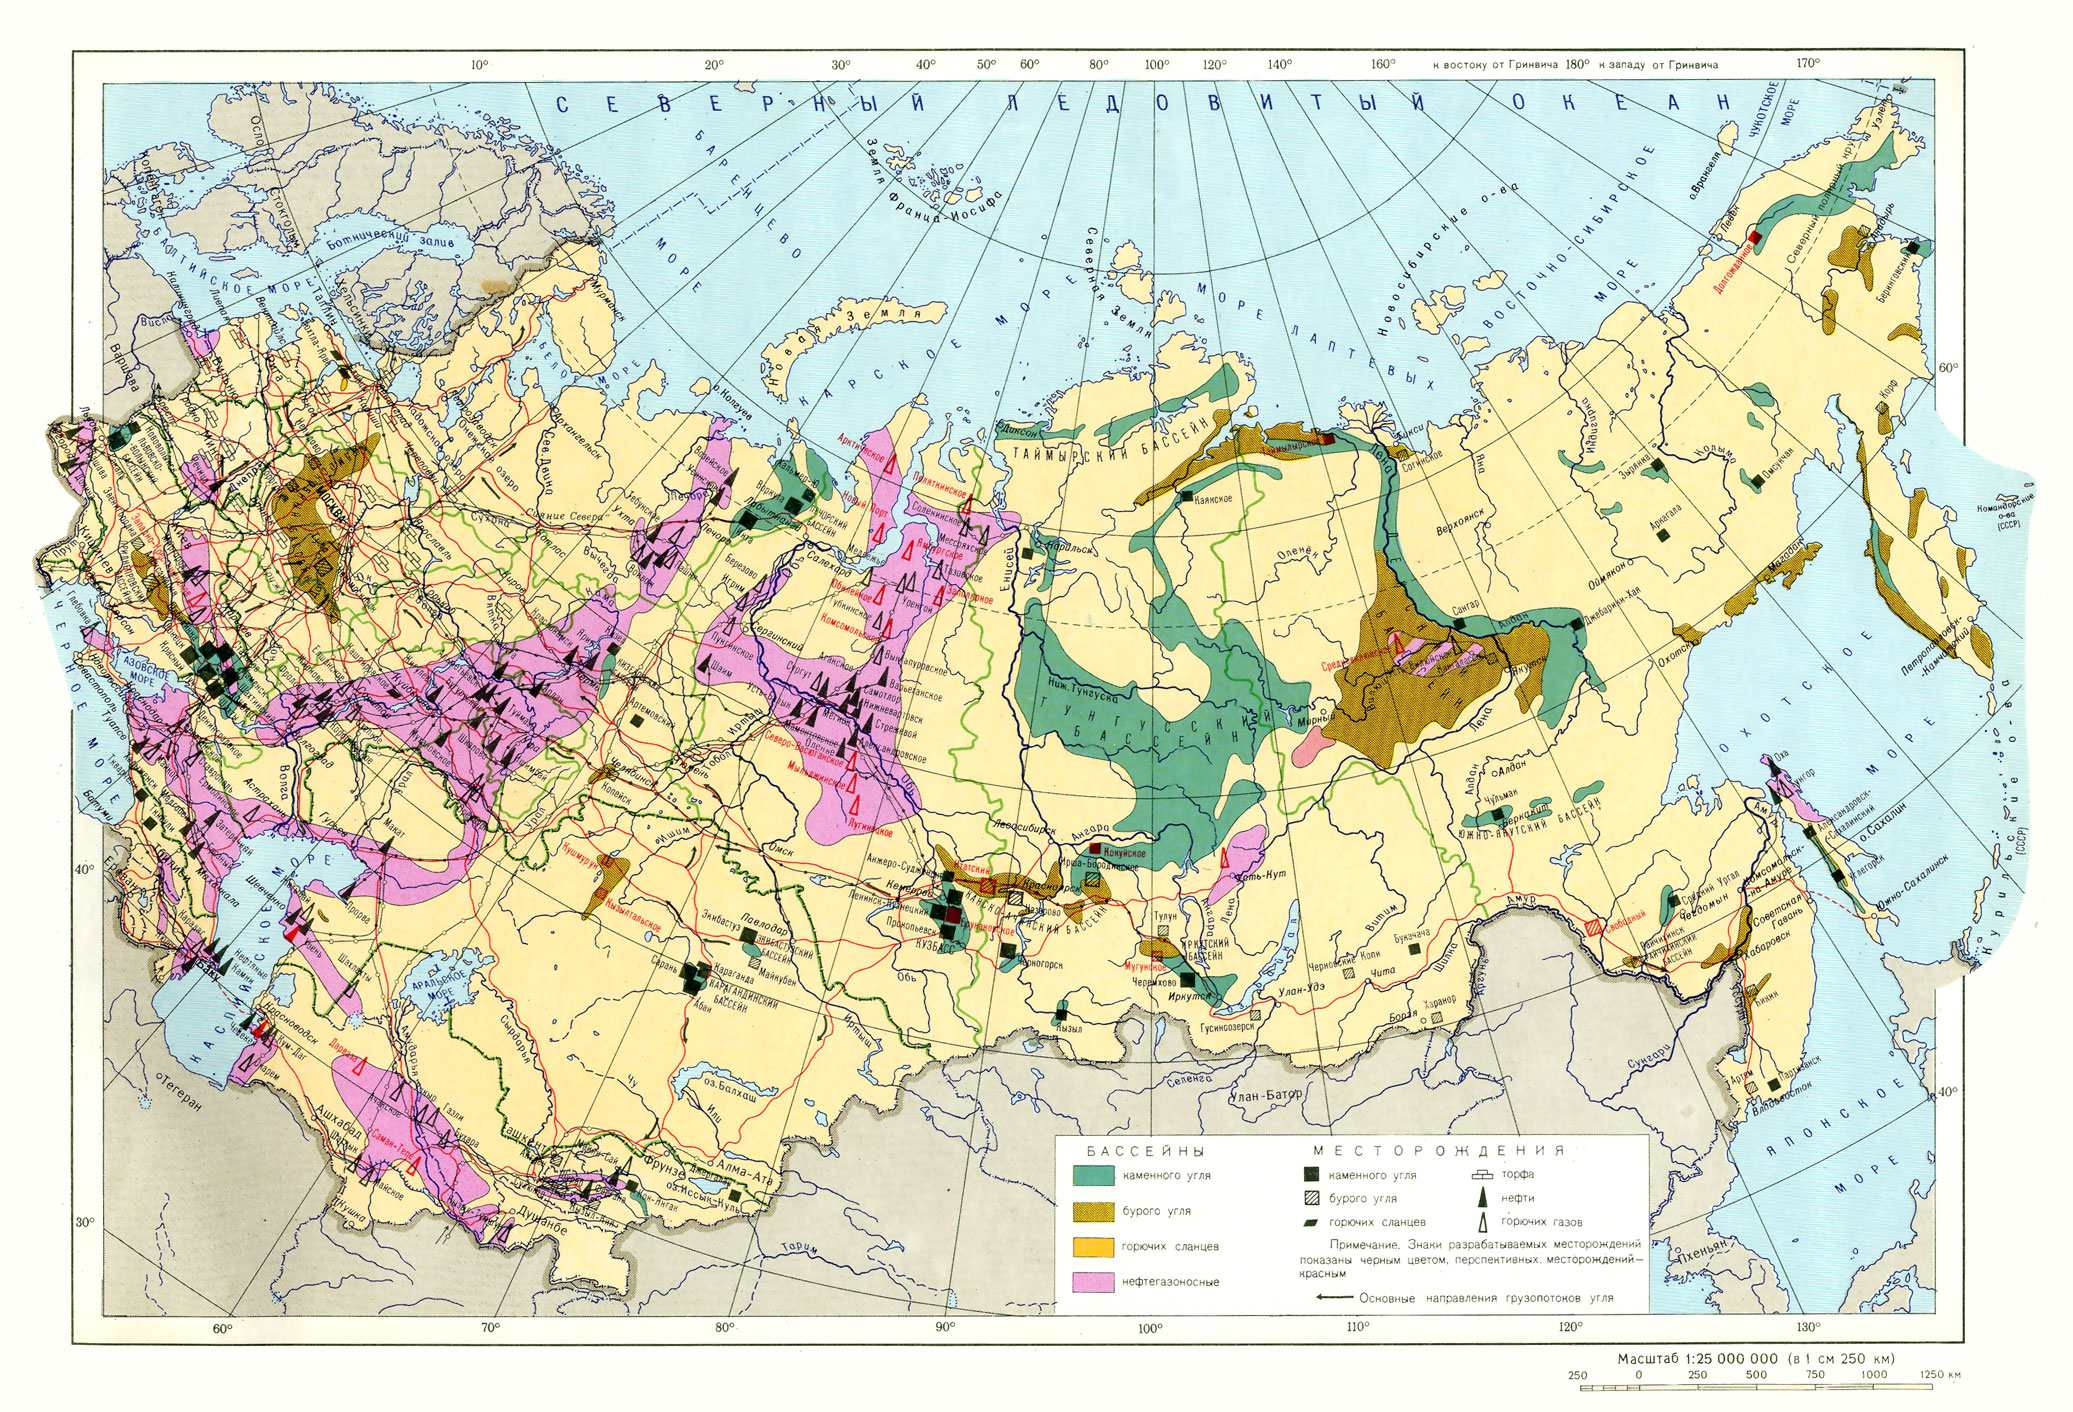 Месторождения угля нефти и газа в России на карте